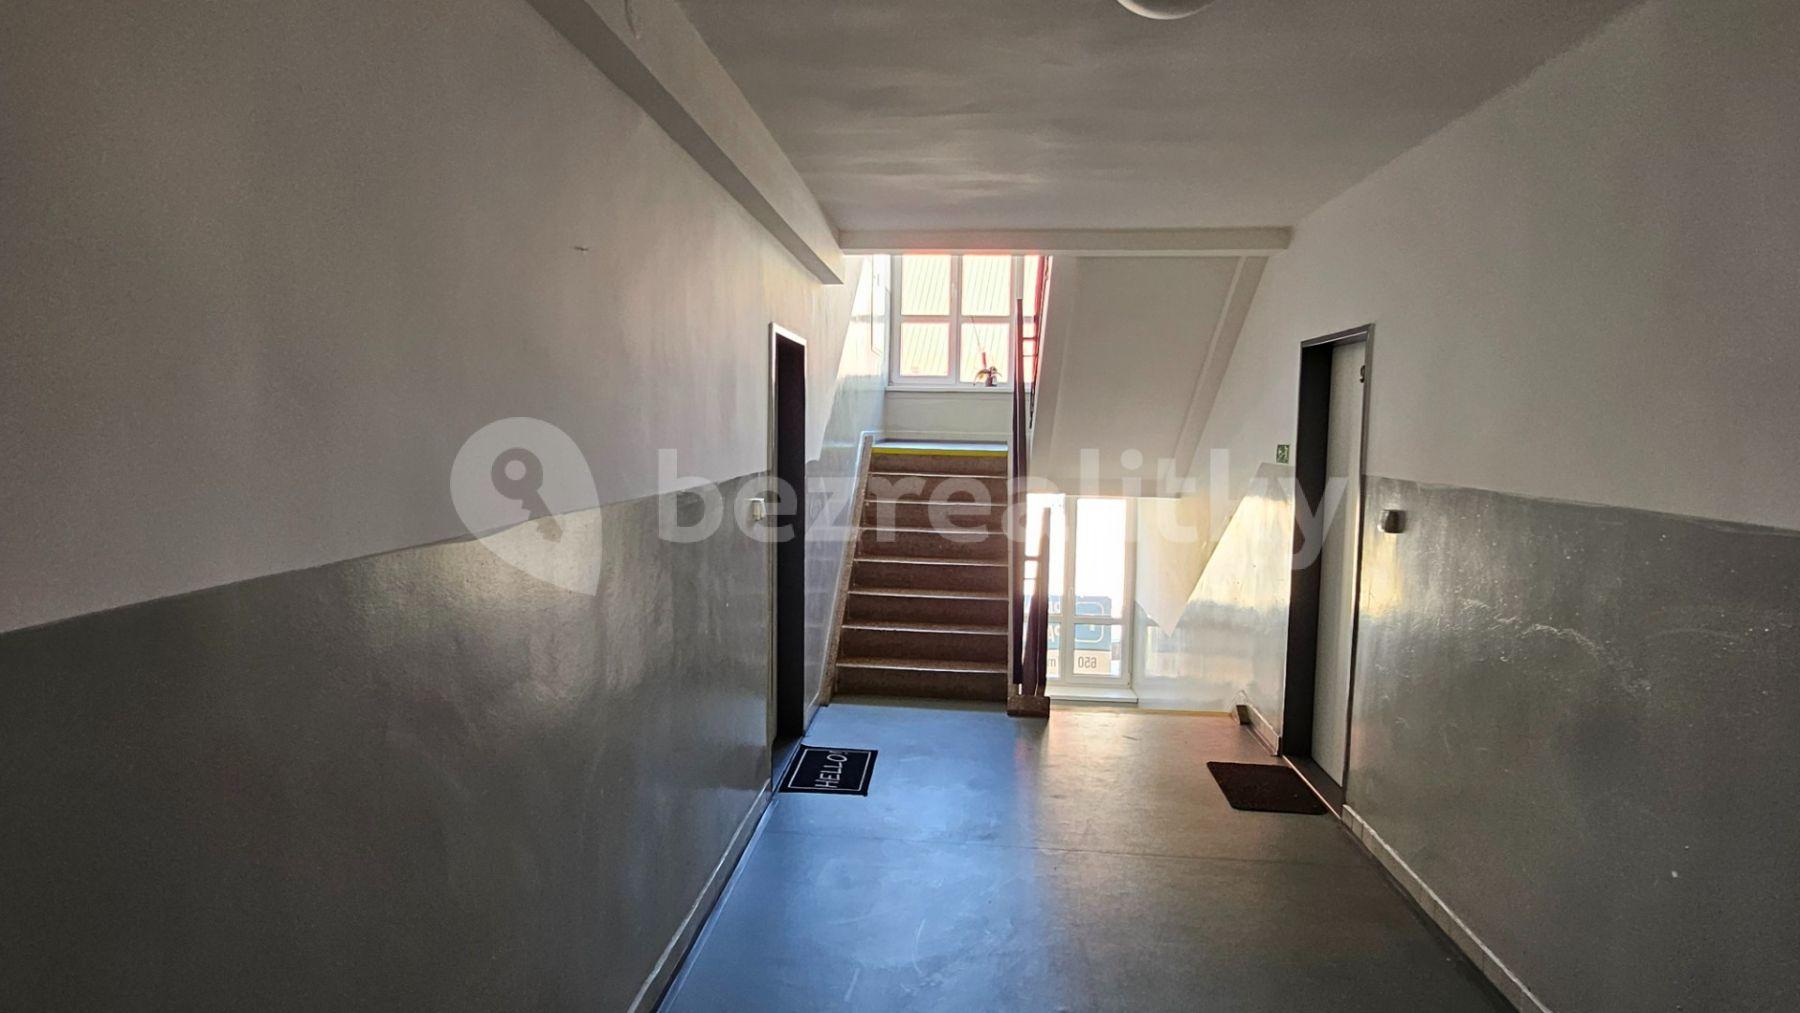 1 bedroom flat to rent, 30 m², Lesní, Most, Ústecký Region